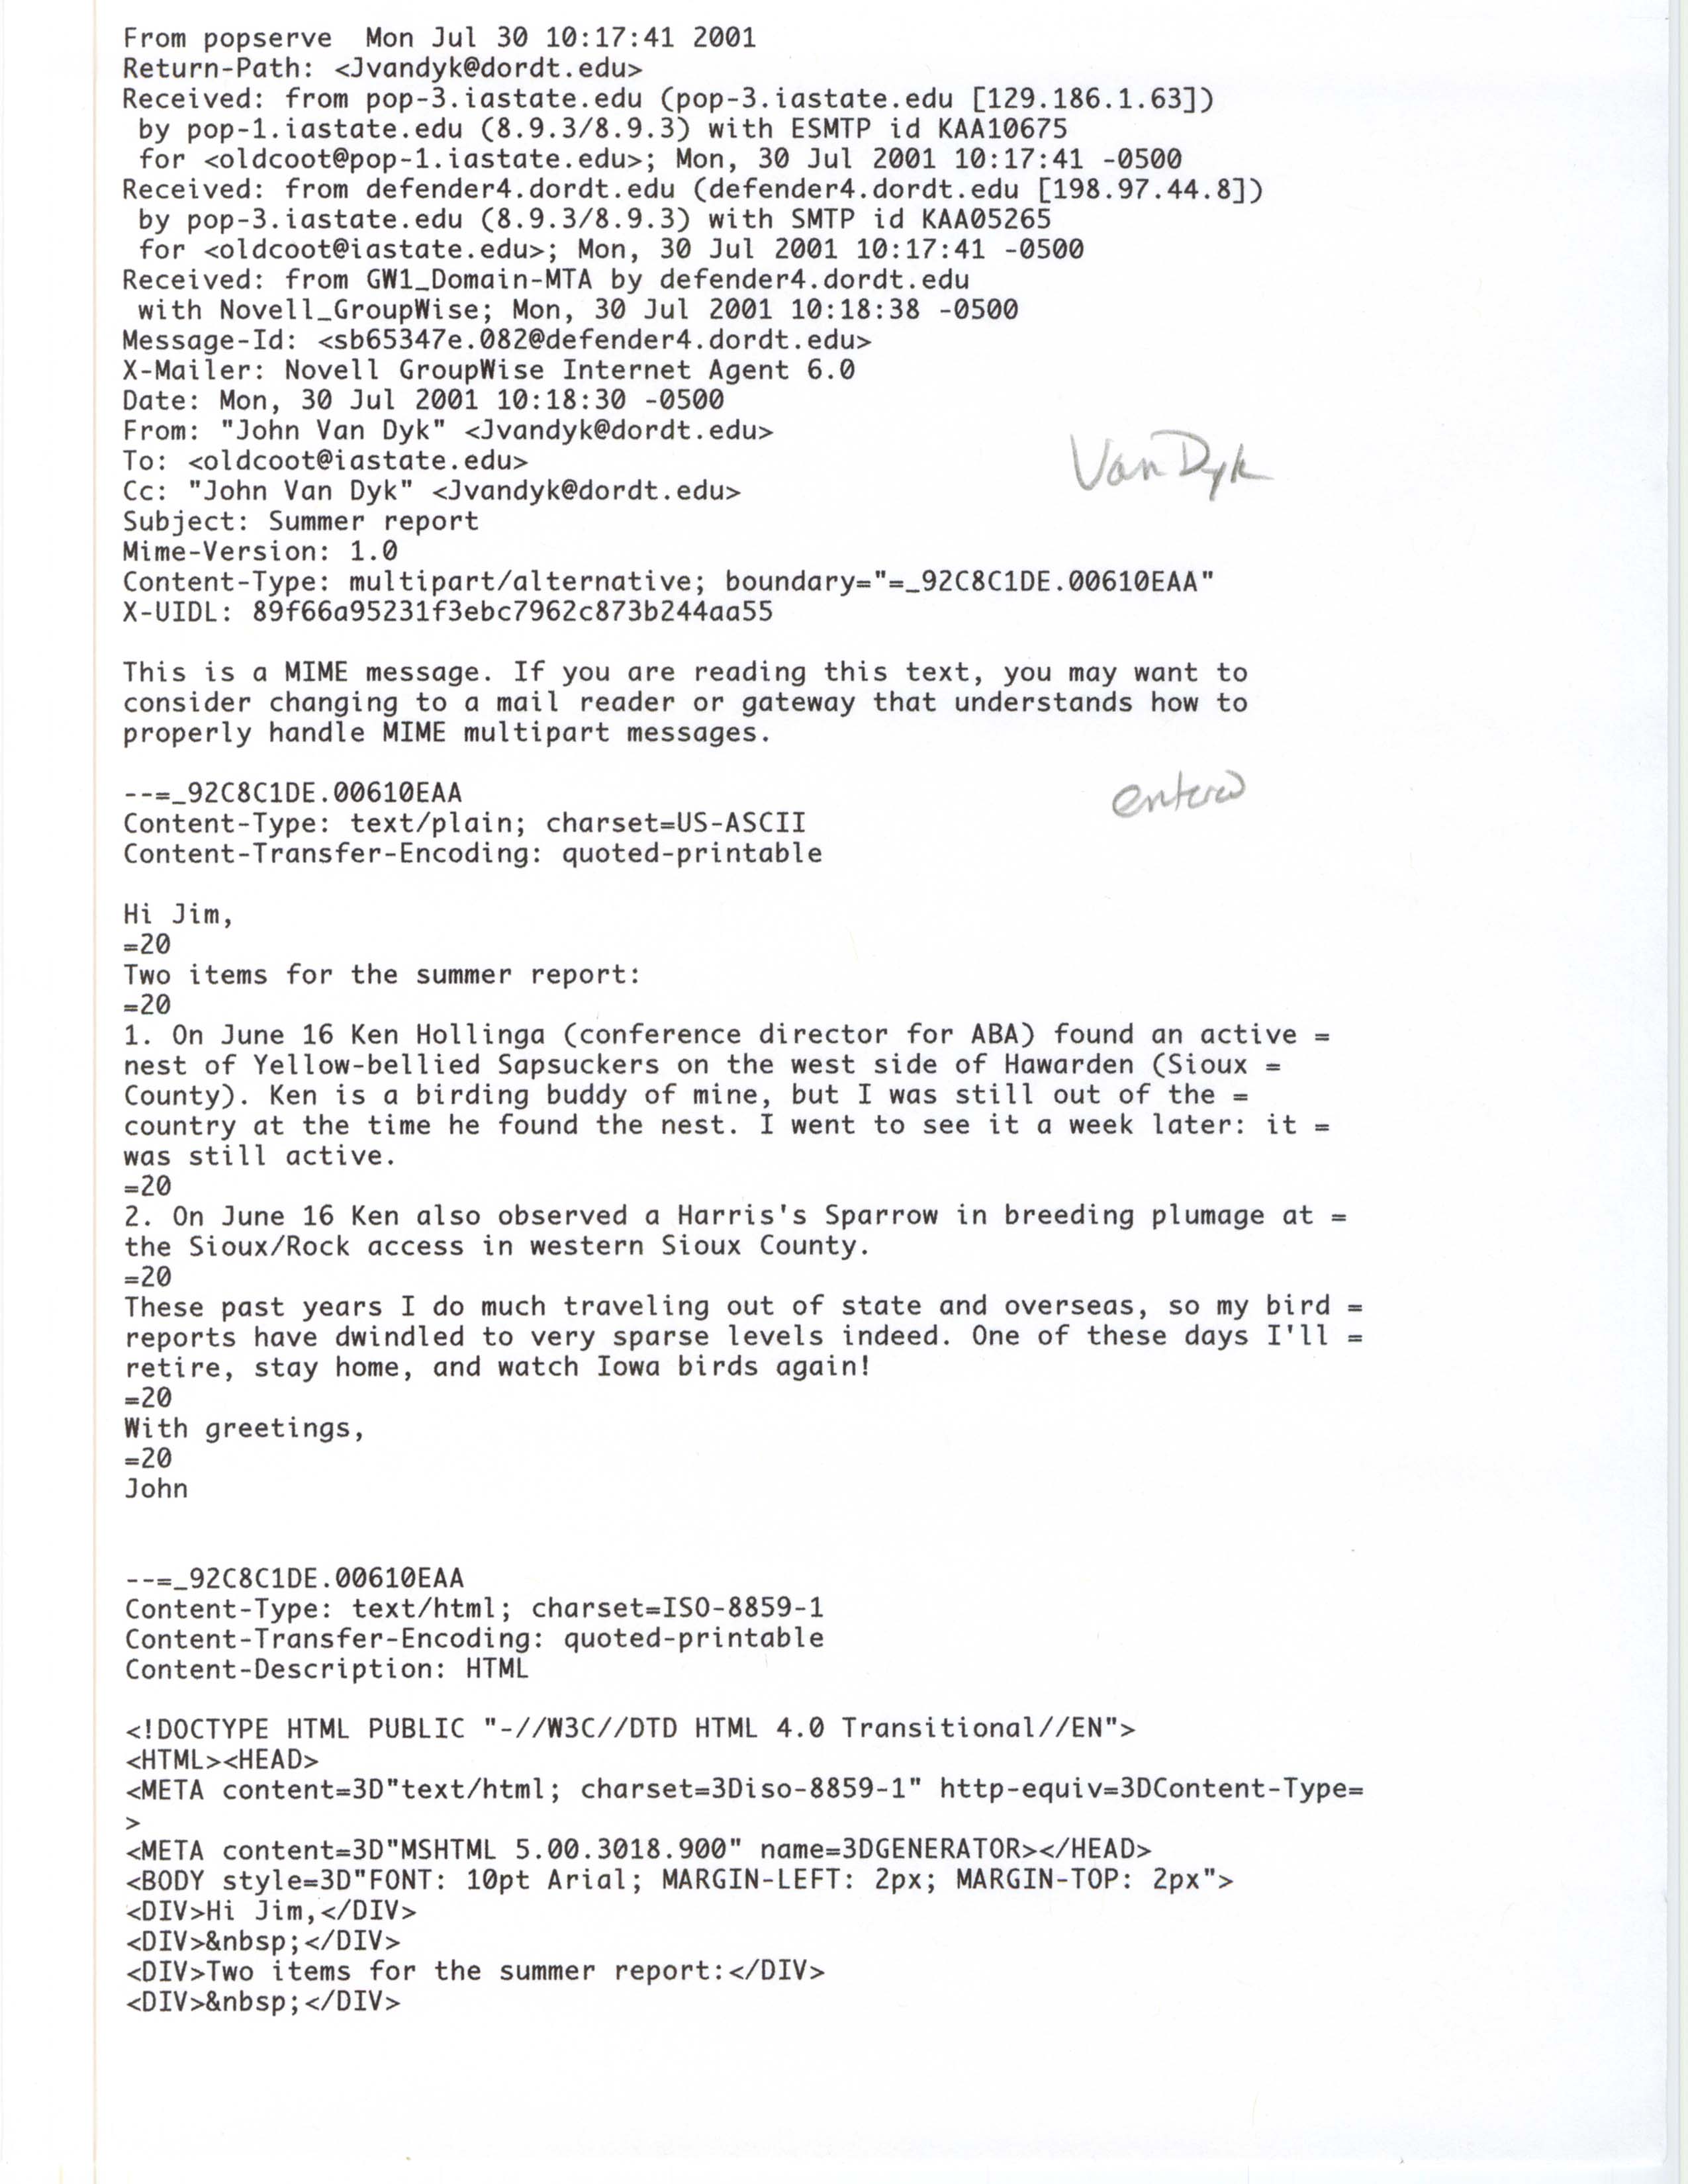 John Van Dyk email to James J. Dinsmore regarding bird sightings, July 30, 2001